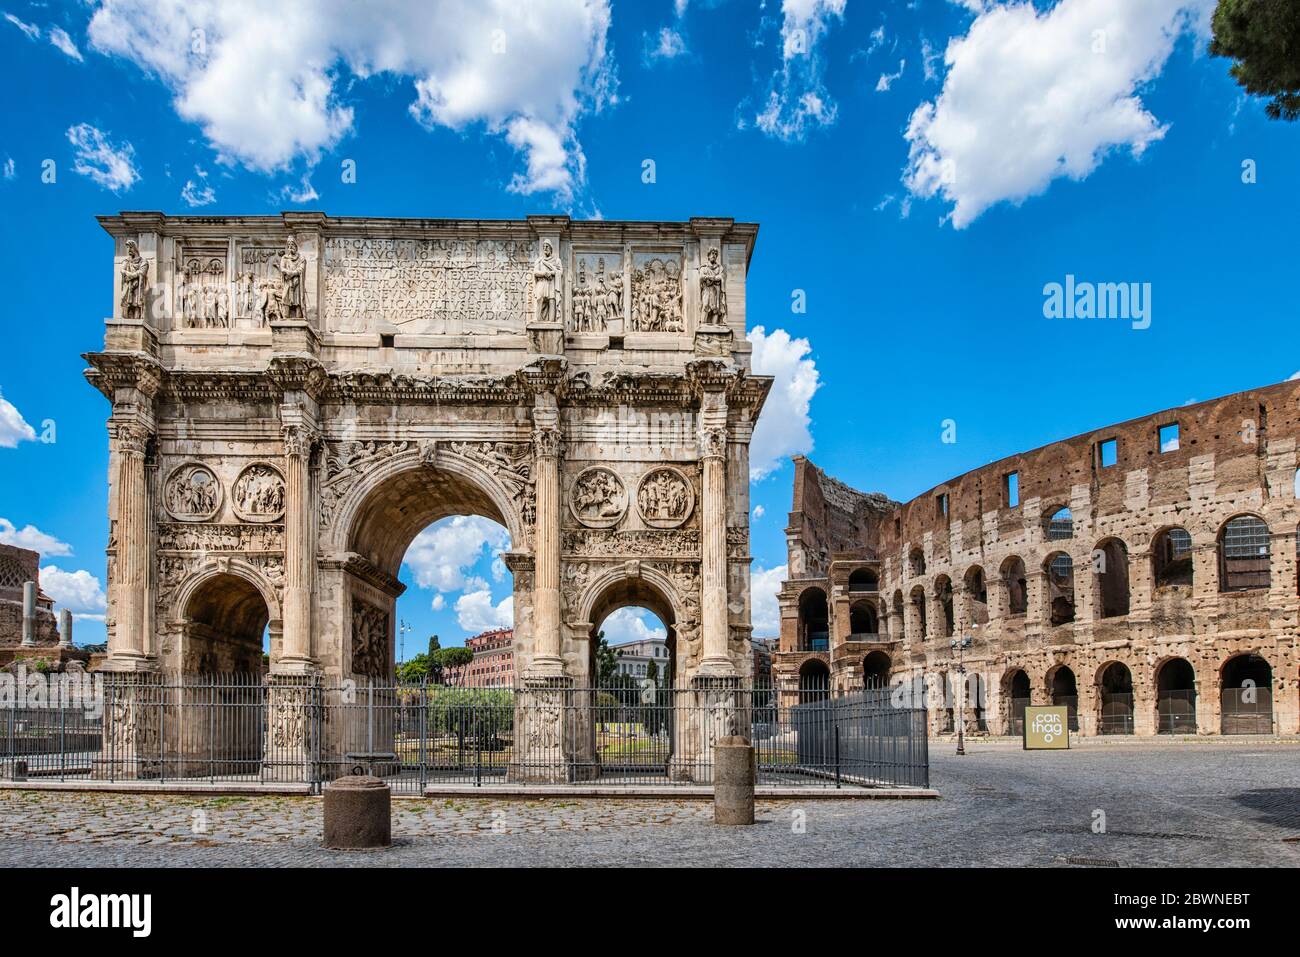 Italy Lazio  Rome in lockdown: Arch of Constantine and Coliseum - Arco di Costantino e Colosseo Stock Photo